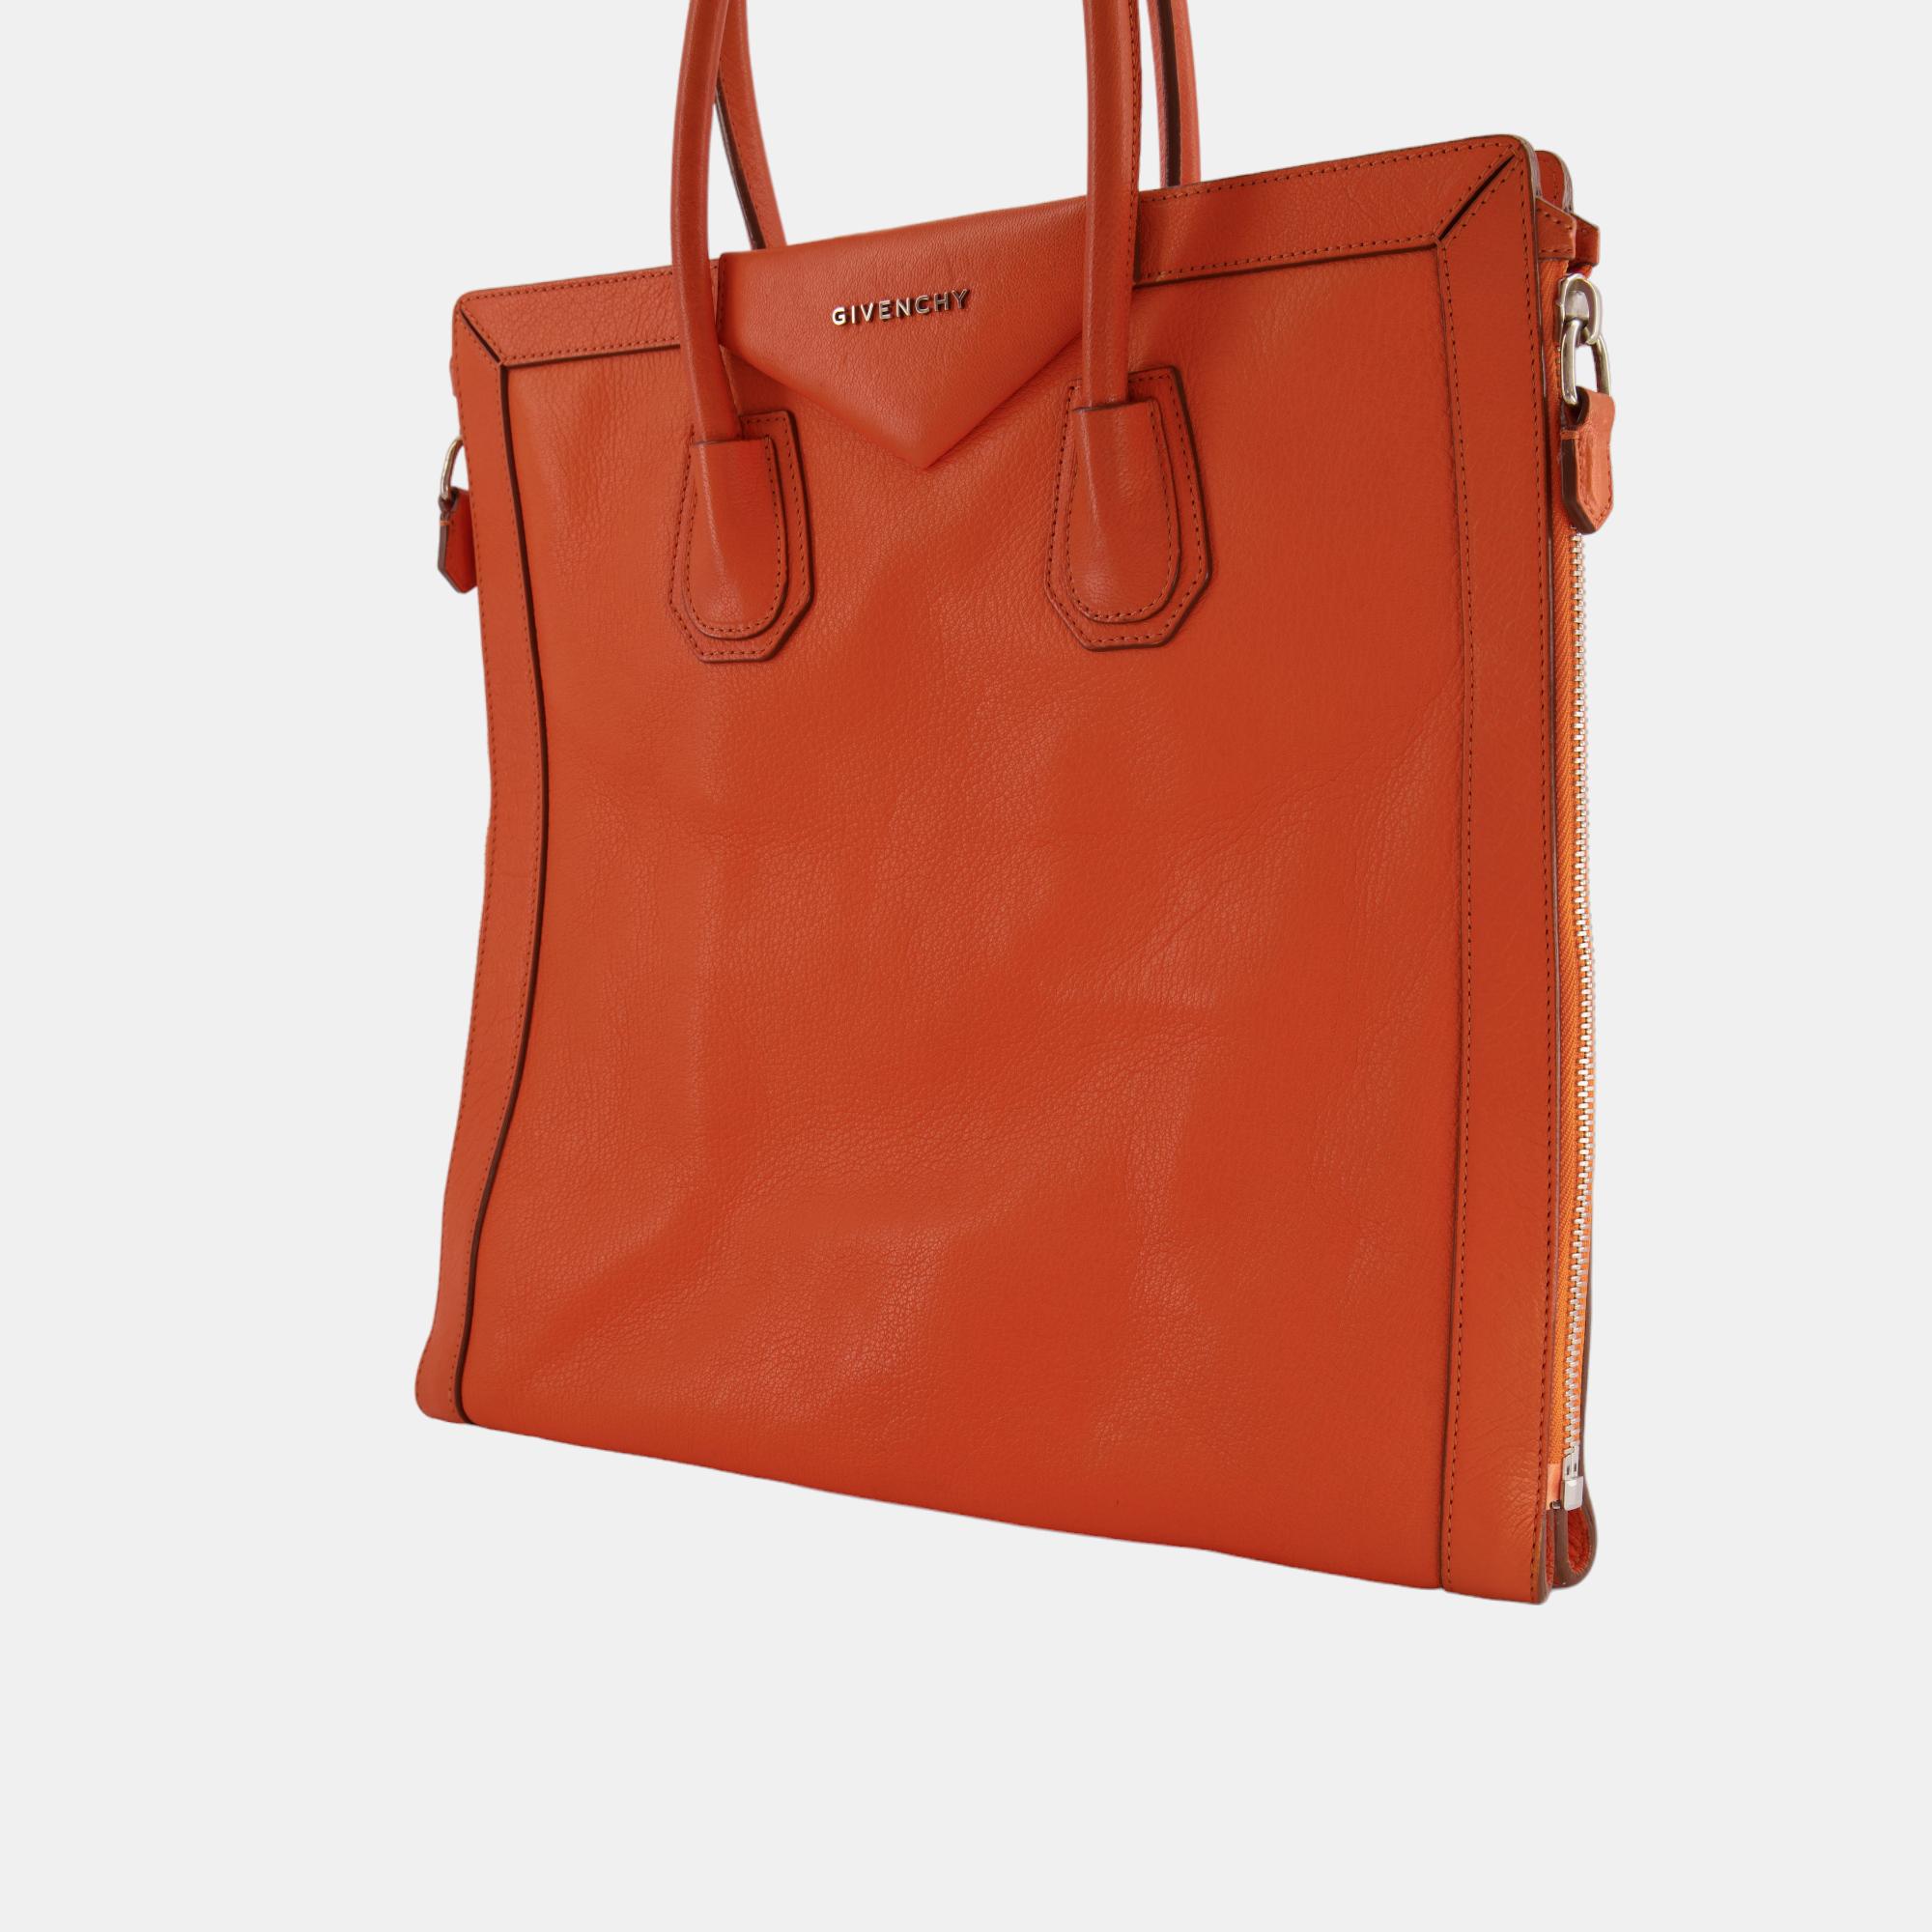 Givenchy Orange Shoulder Tote Bag With Side Zip